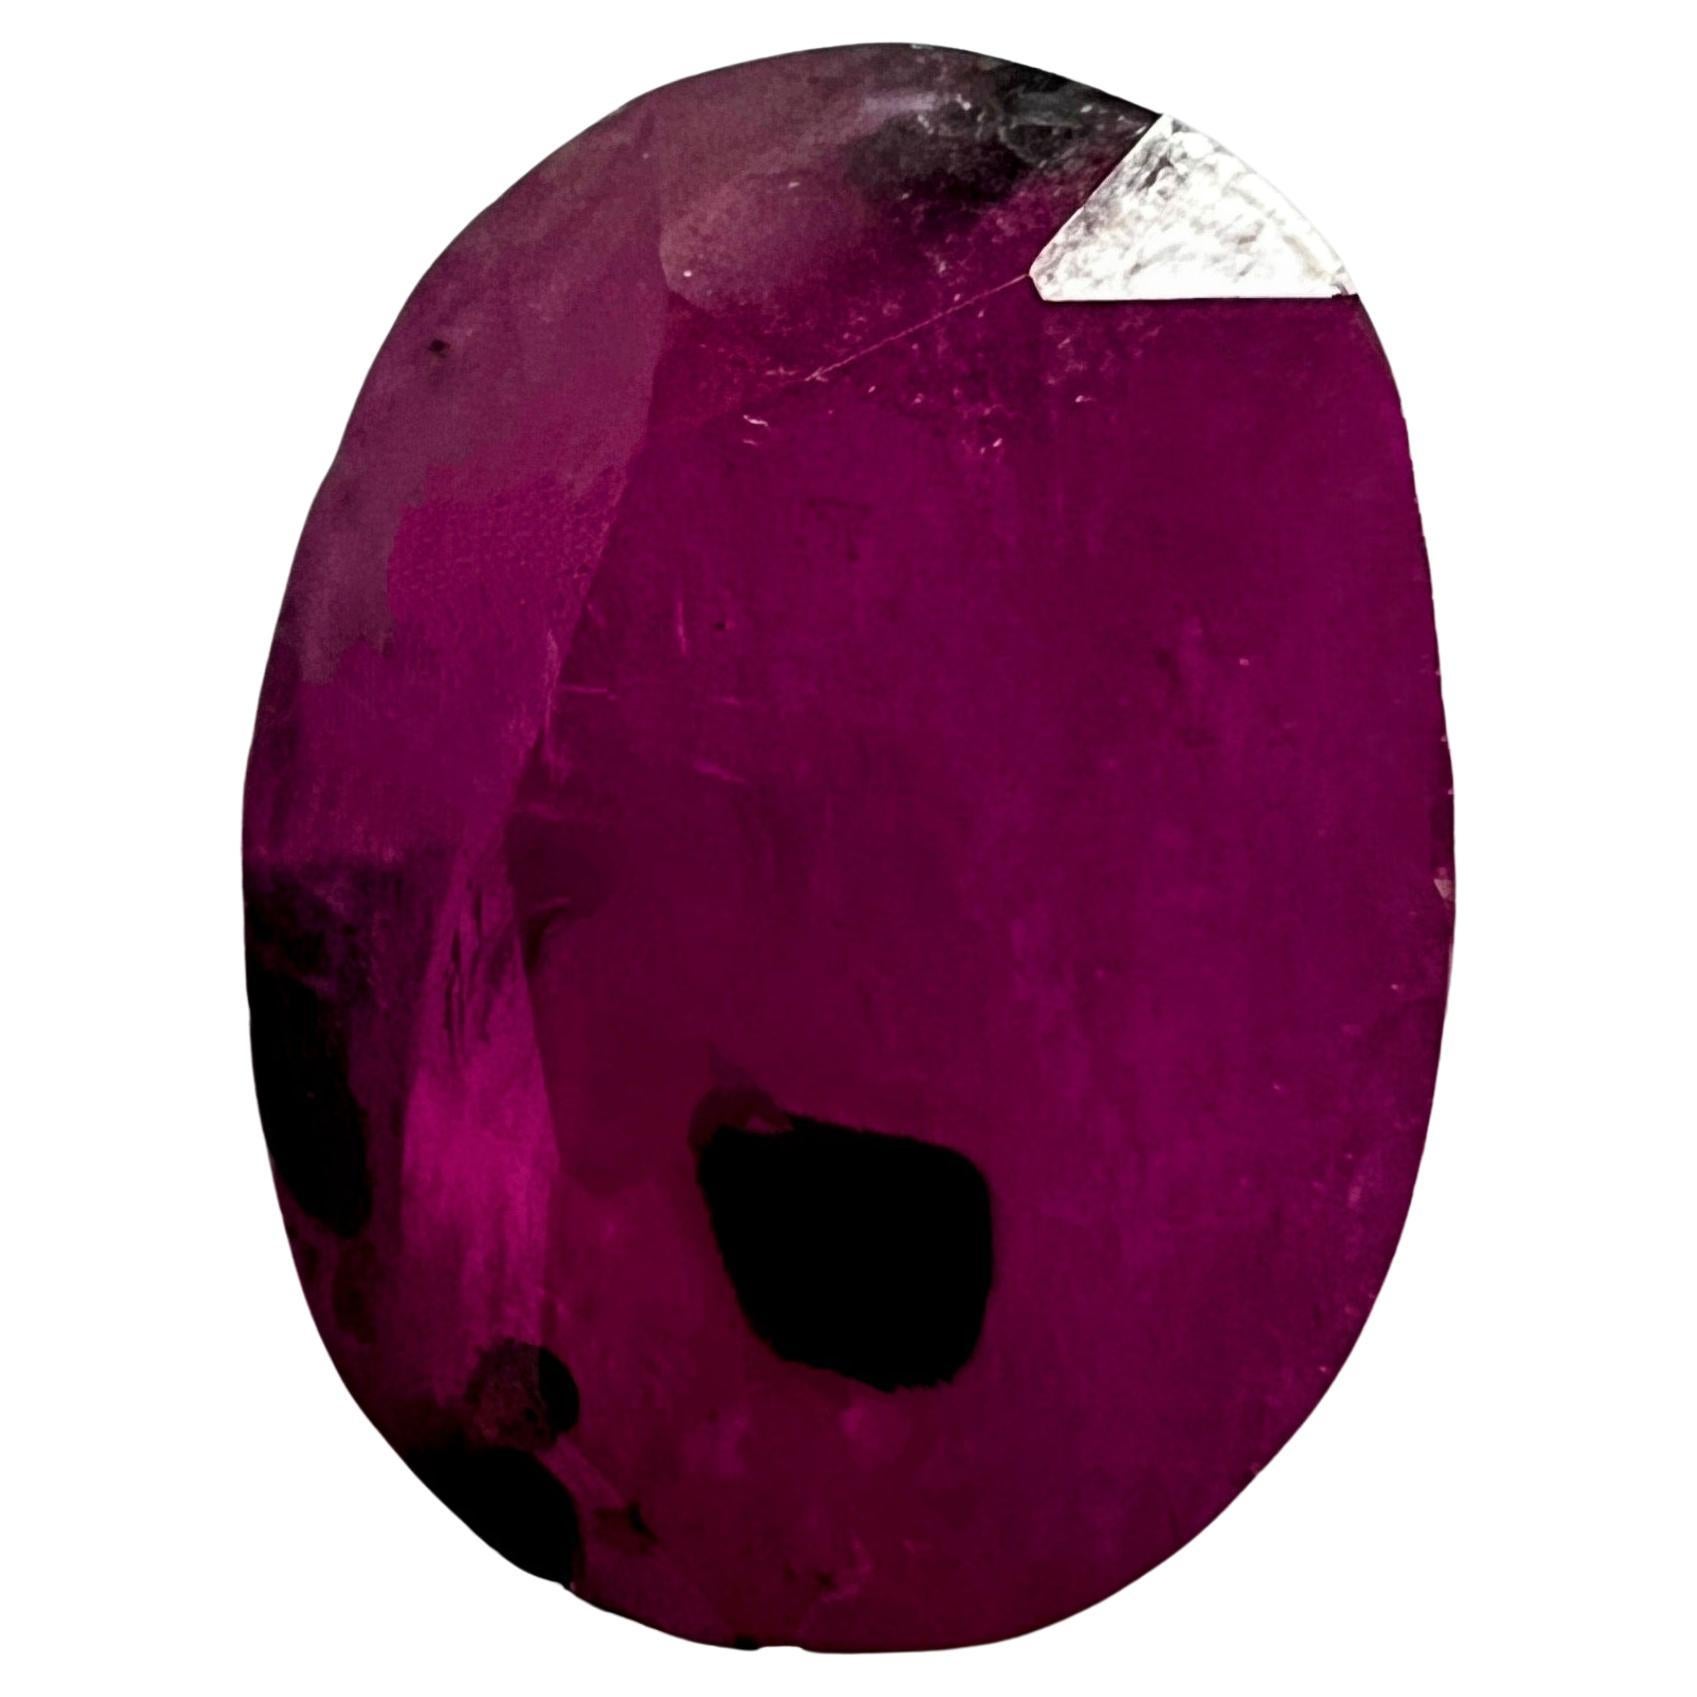 Veredeln Sie Ihre Schmuckkreationen mit der bezaubernden Schönheit unseres losen Edelsteins 2.39Ct 100% Natural Ruby Oval. Dieser exquisite Edelstein mit seinem bezaubernden rosa Farbton und dem eleganten ovalen Schliff ist ein Fest der Romantik und